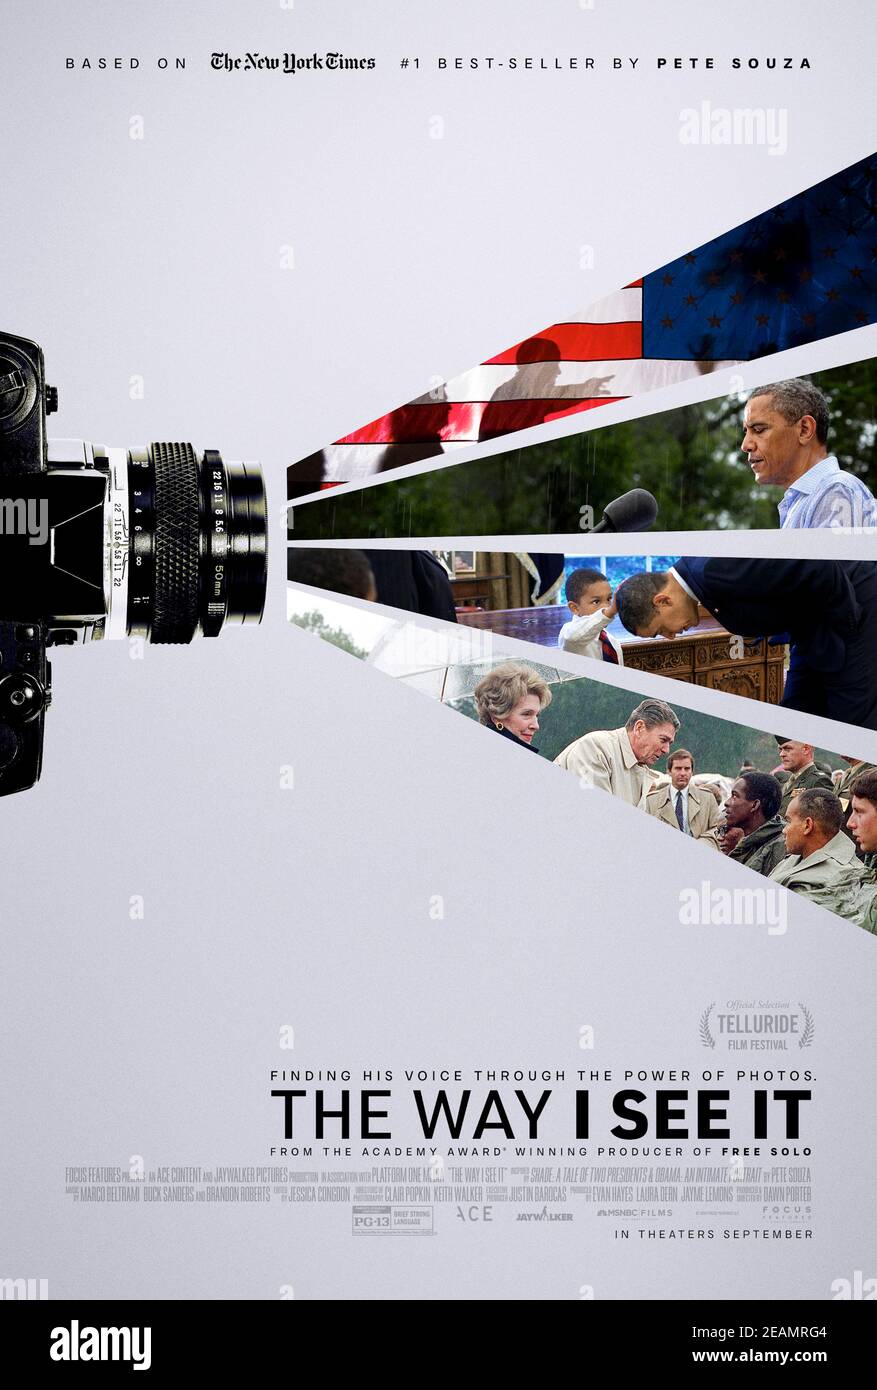 The Way I See IT (2020) réalisé par Dawn porter et mettant en vedette Pete Souza, Barack Obama et Ben Rhode. Documentaire sur le voyage de Pete Souza, l'ancien photographe officiel de la Maison Blanche, en tant que personne disposant d'une autorisation secrète et d'un accès total au Président. Banque D'Images